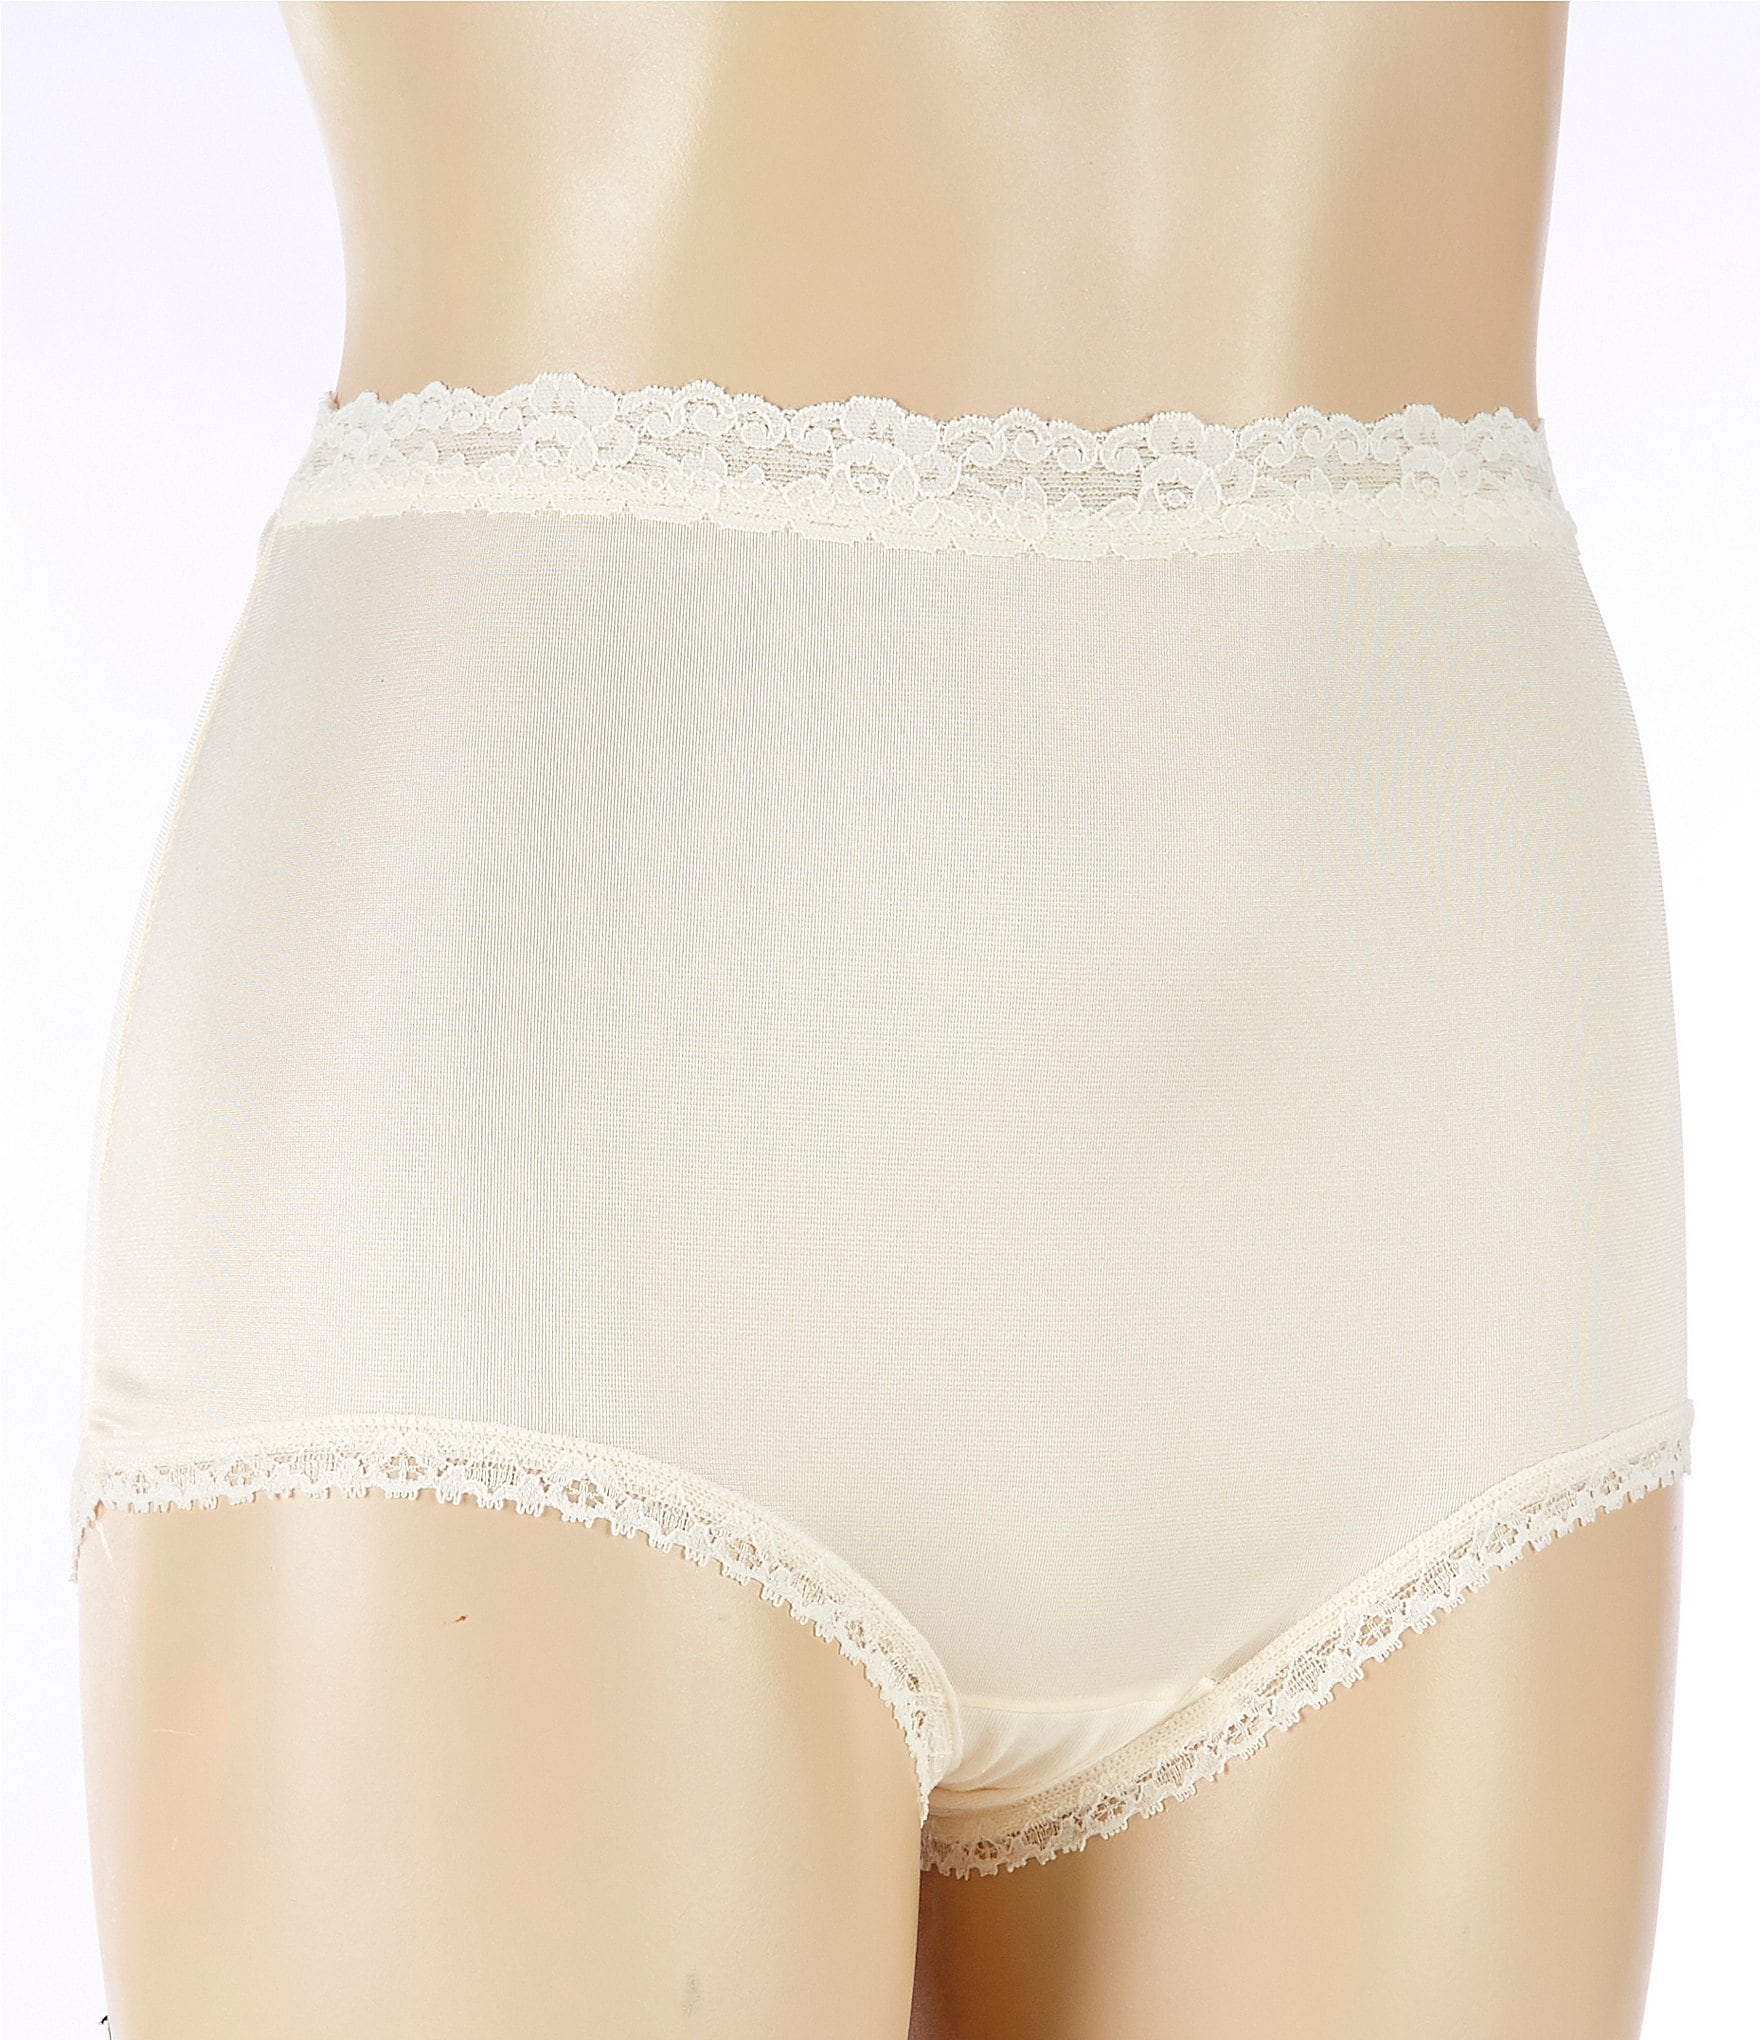 Cotillion Brief Women's Panties & Underwear